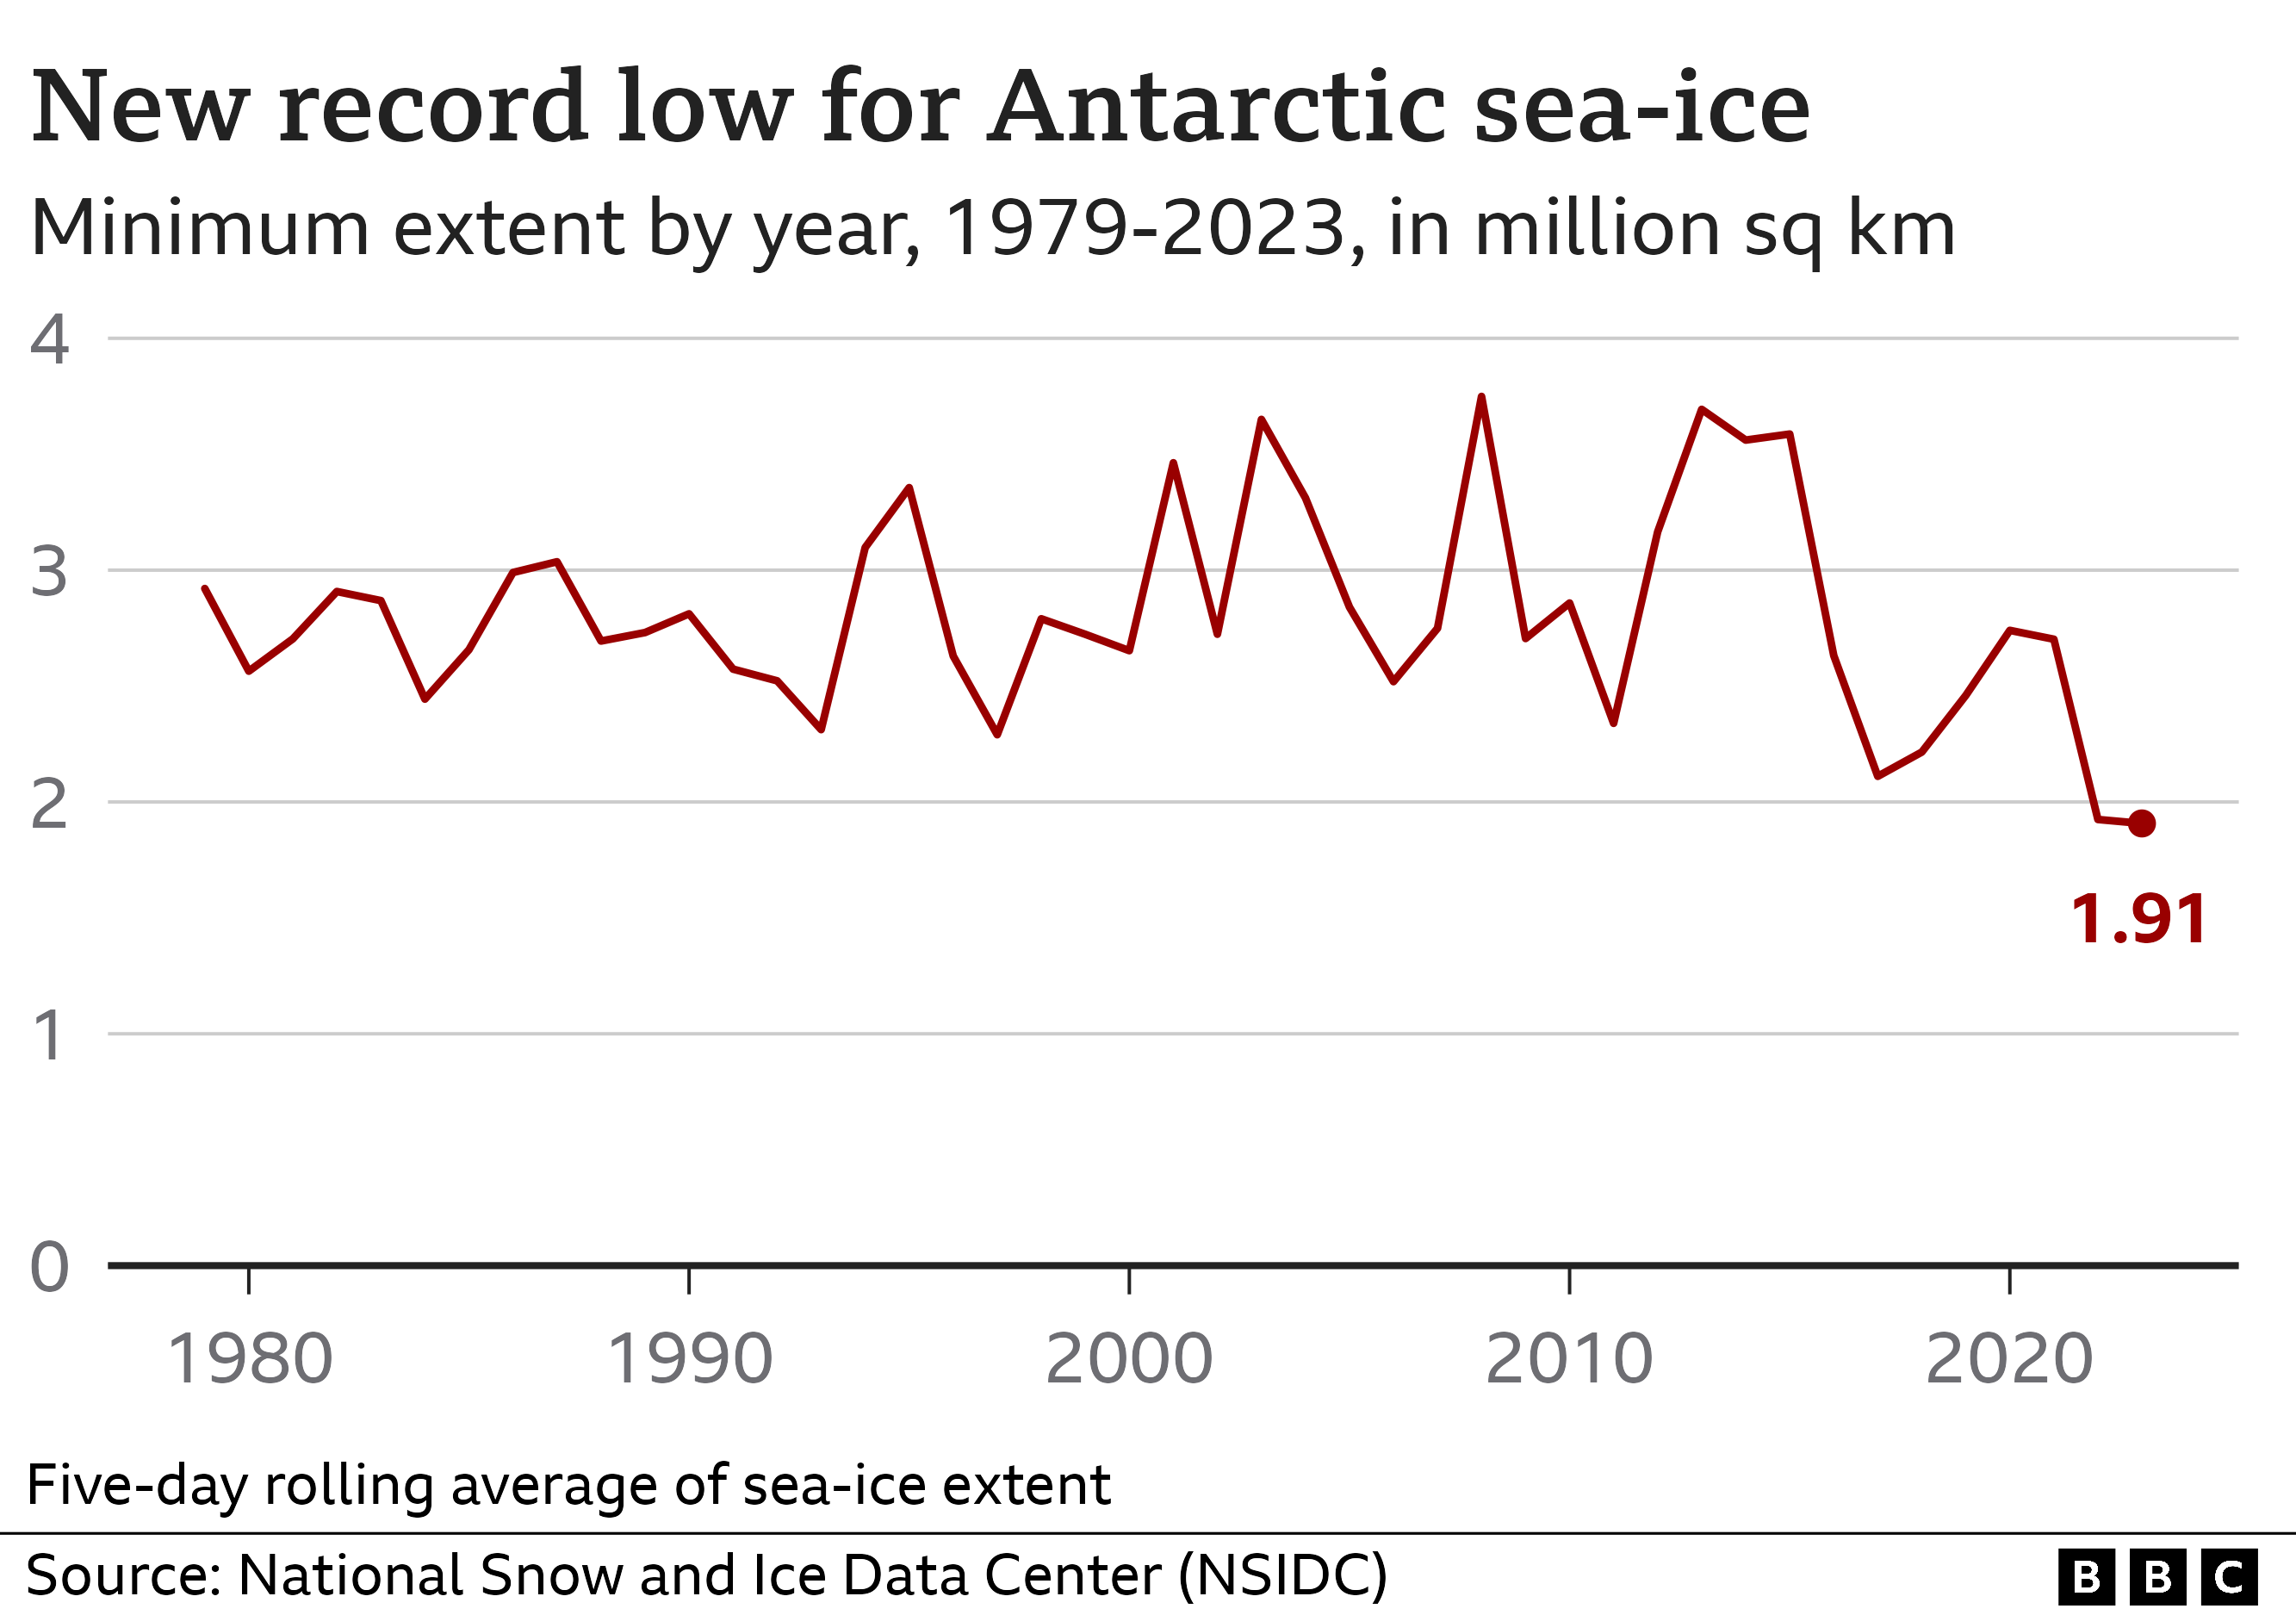 1979'dan 2023'e kadar her yıl ölçülen deniz buzunun en düşük noktasını gösteren çizgi grafik. Çizgi önemli ölçüde dalgalanmasına rağmen, son yıllarda 2023'te 1,91 milyon kilometrekare ile yeni bir rekor kırılarak sona eren hafif bir düşüş eğilimi var.